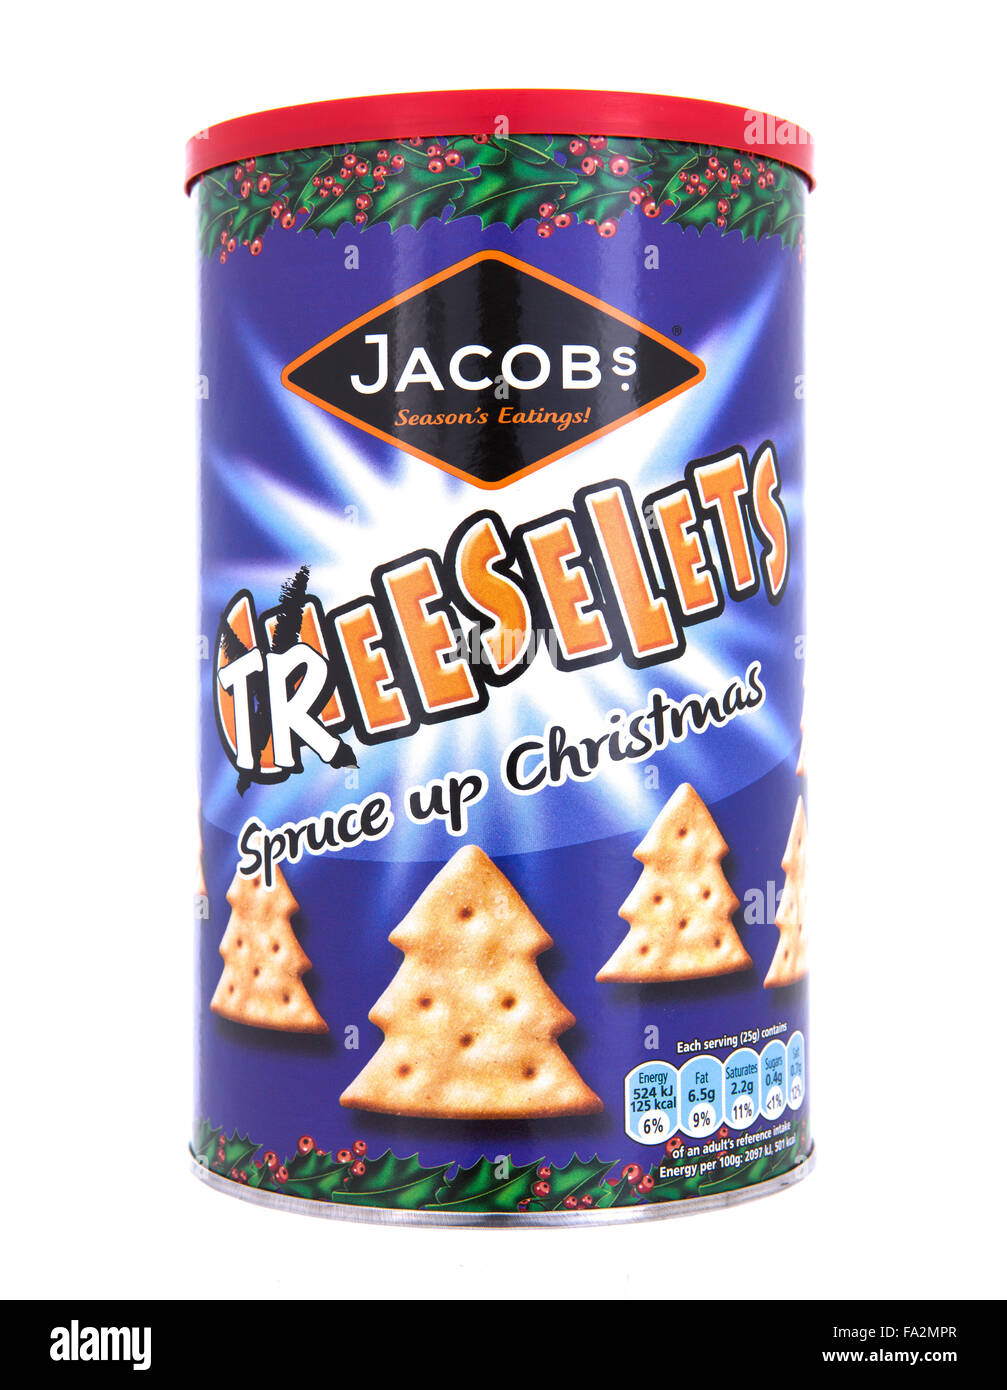 Jacobs Cheeselets Treeselets de Noël sur fond blanc Banque D'Images